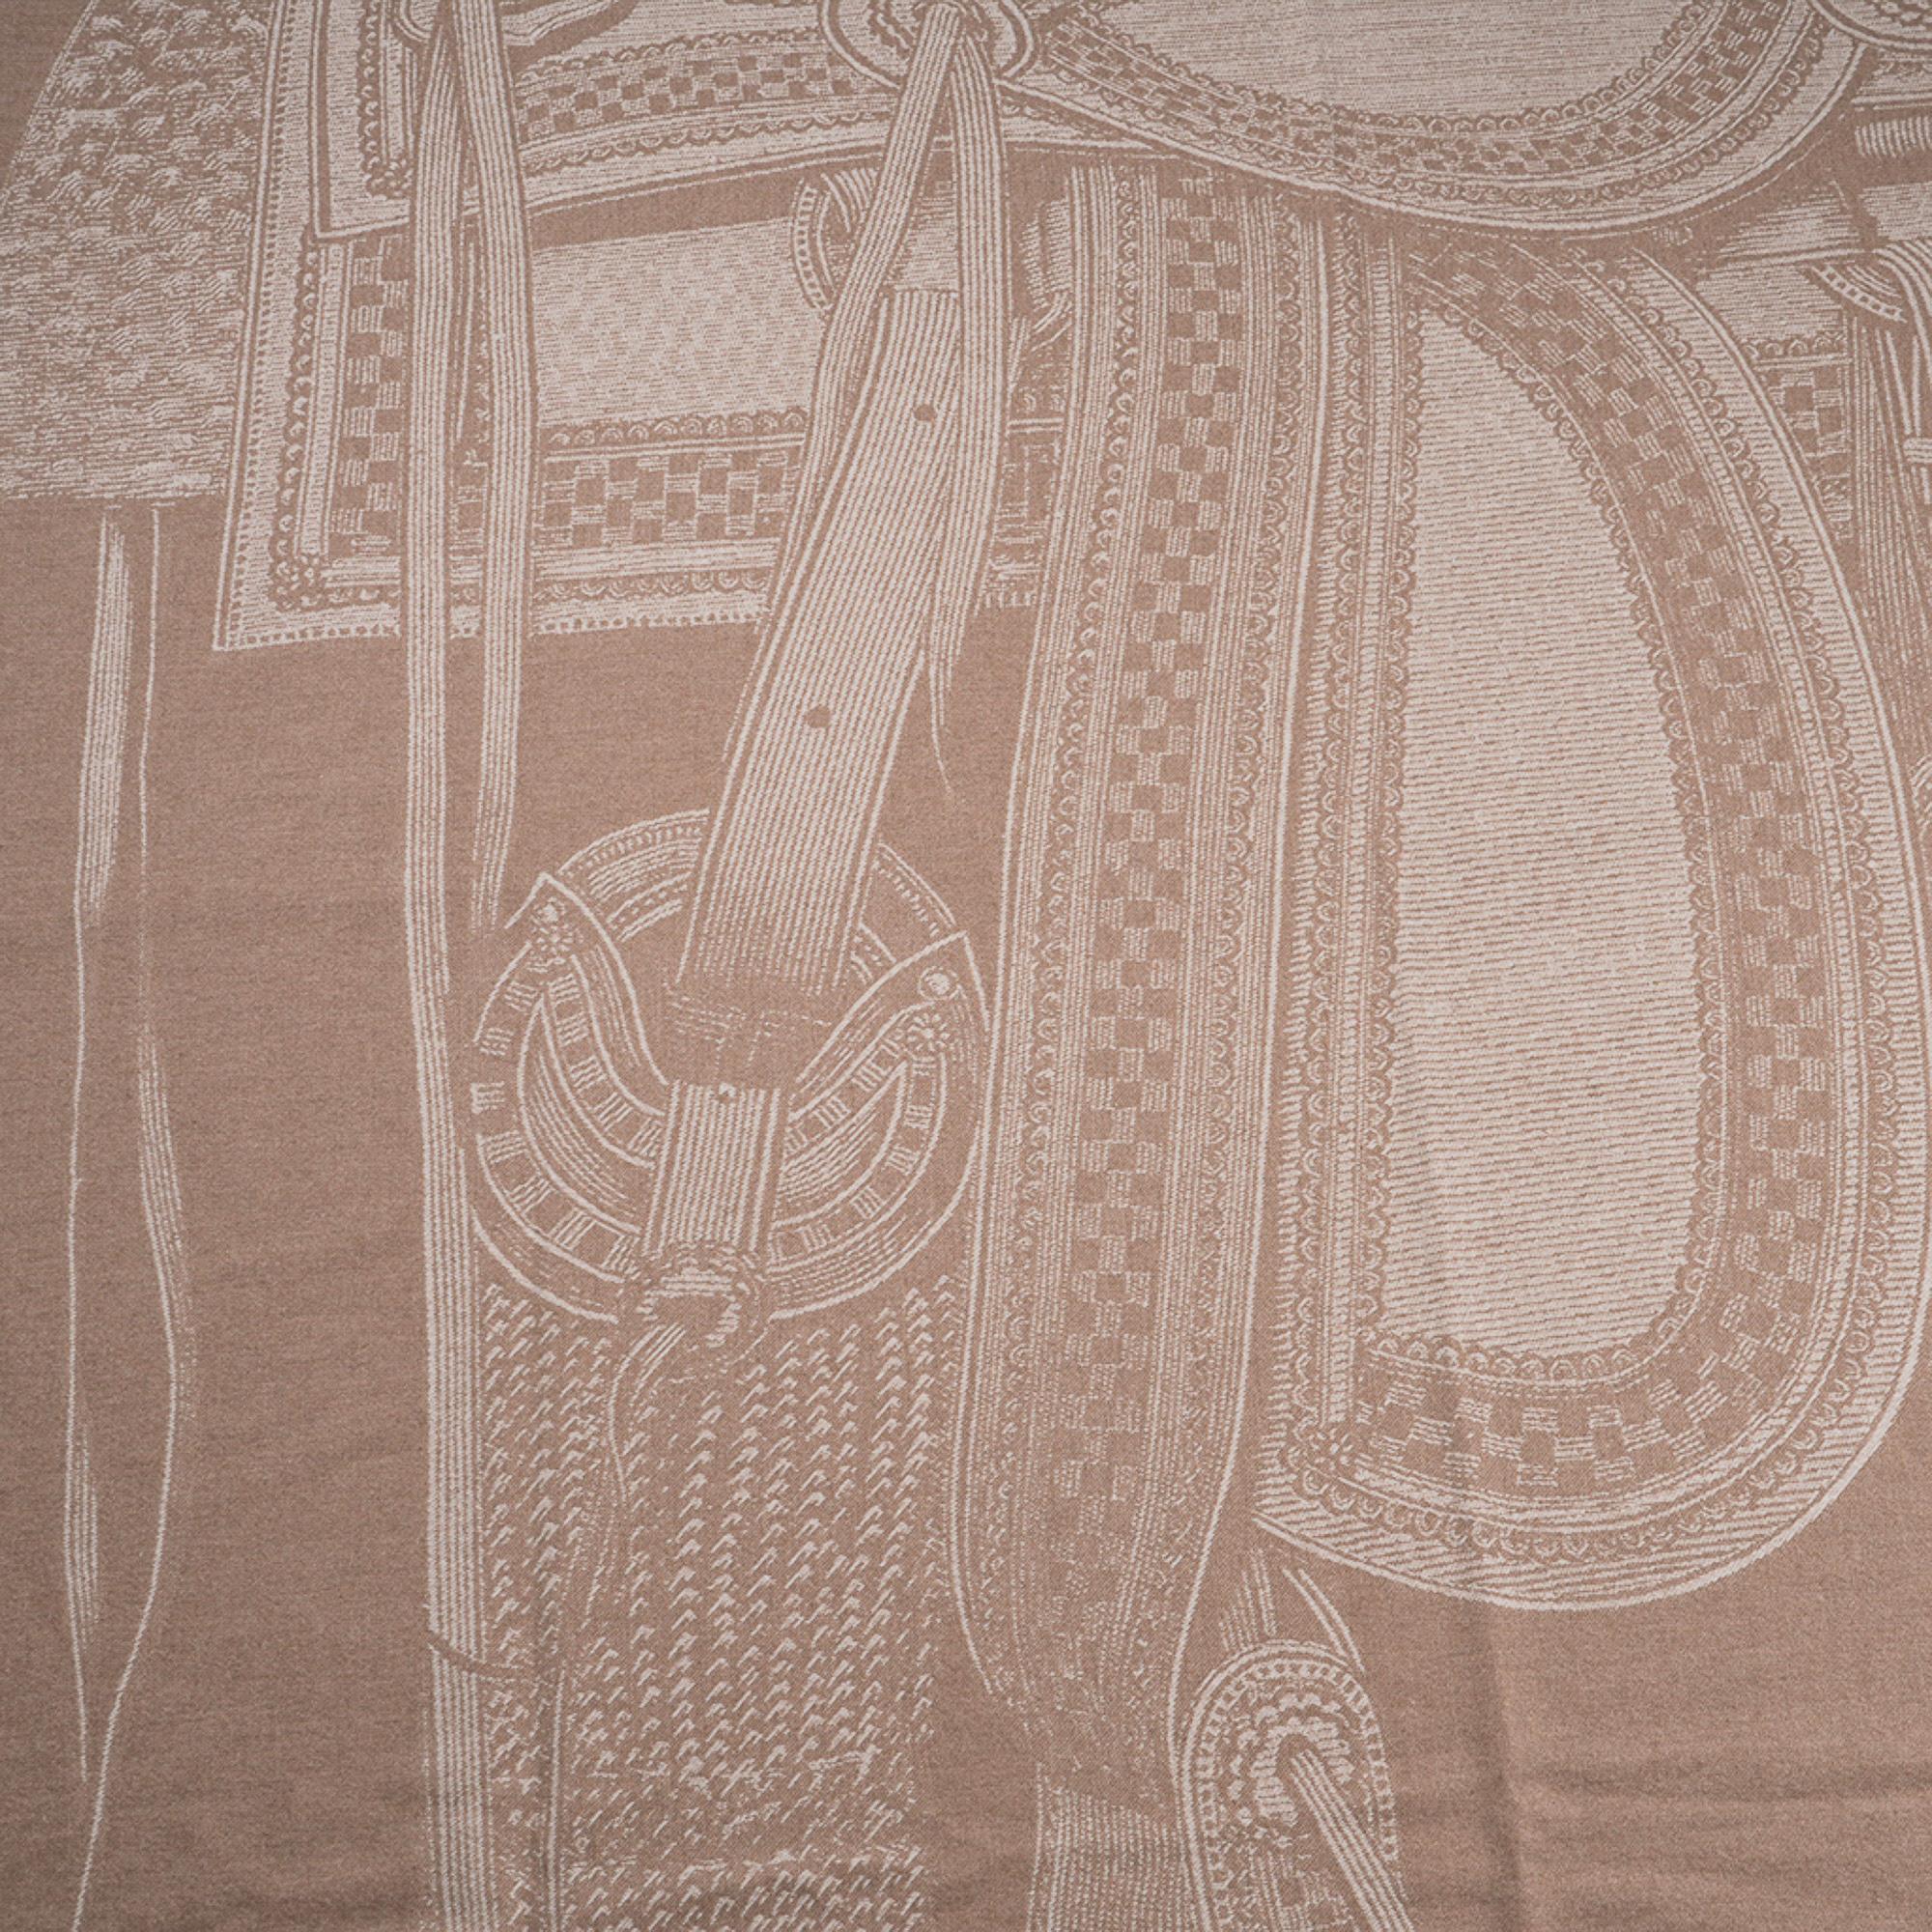 Mightychic vous propose une couverture Hermès Selle Far West garantie authentique en couleur sable.
Le cachemire tissé en jacquard et bordé de franges vous permet de voir les détails exquis de l'image de chaque côté.
Cette selle extraordinaire est